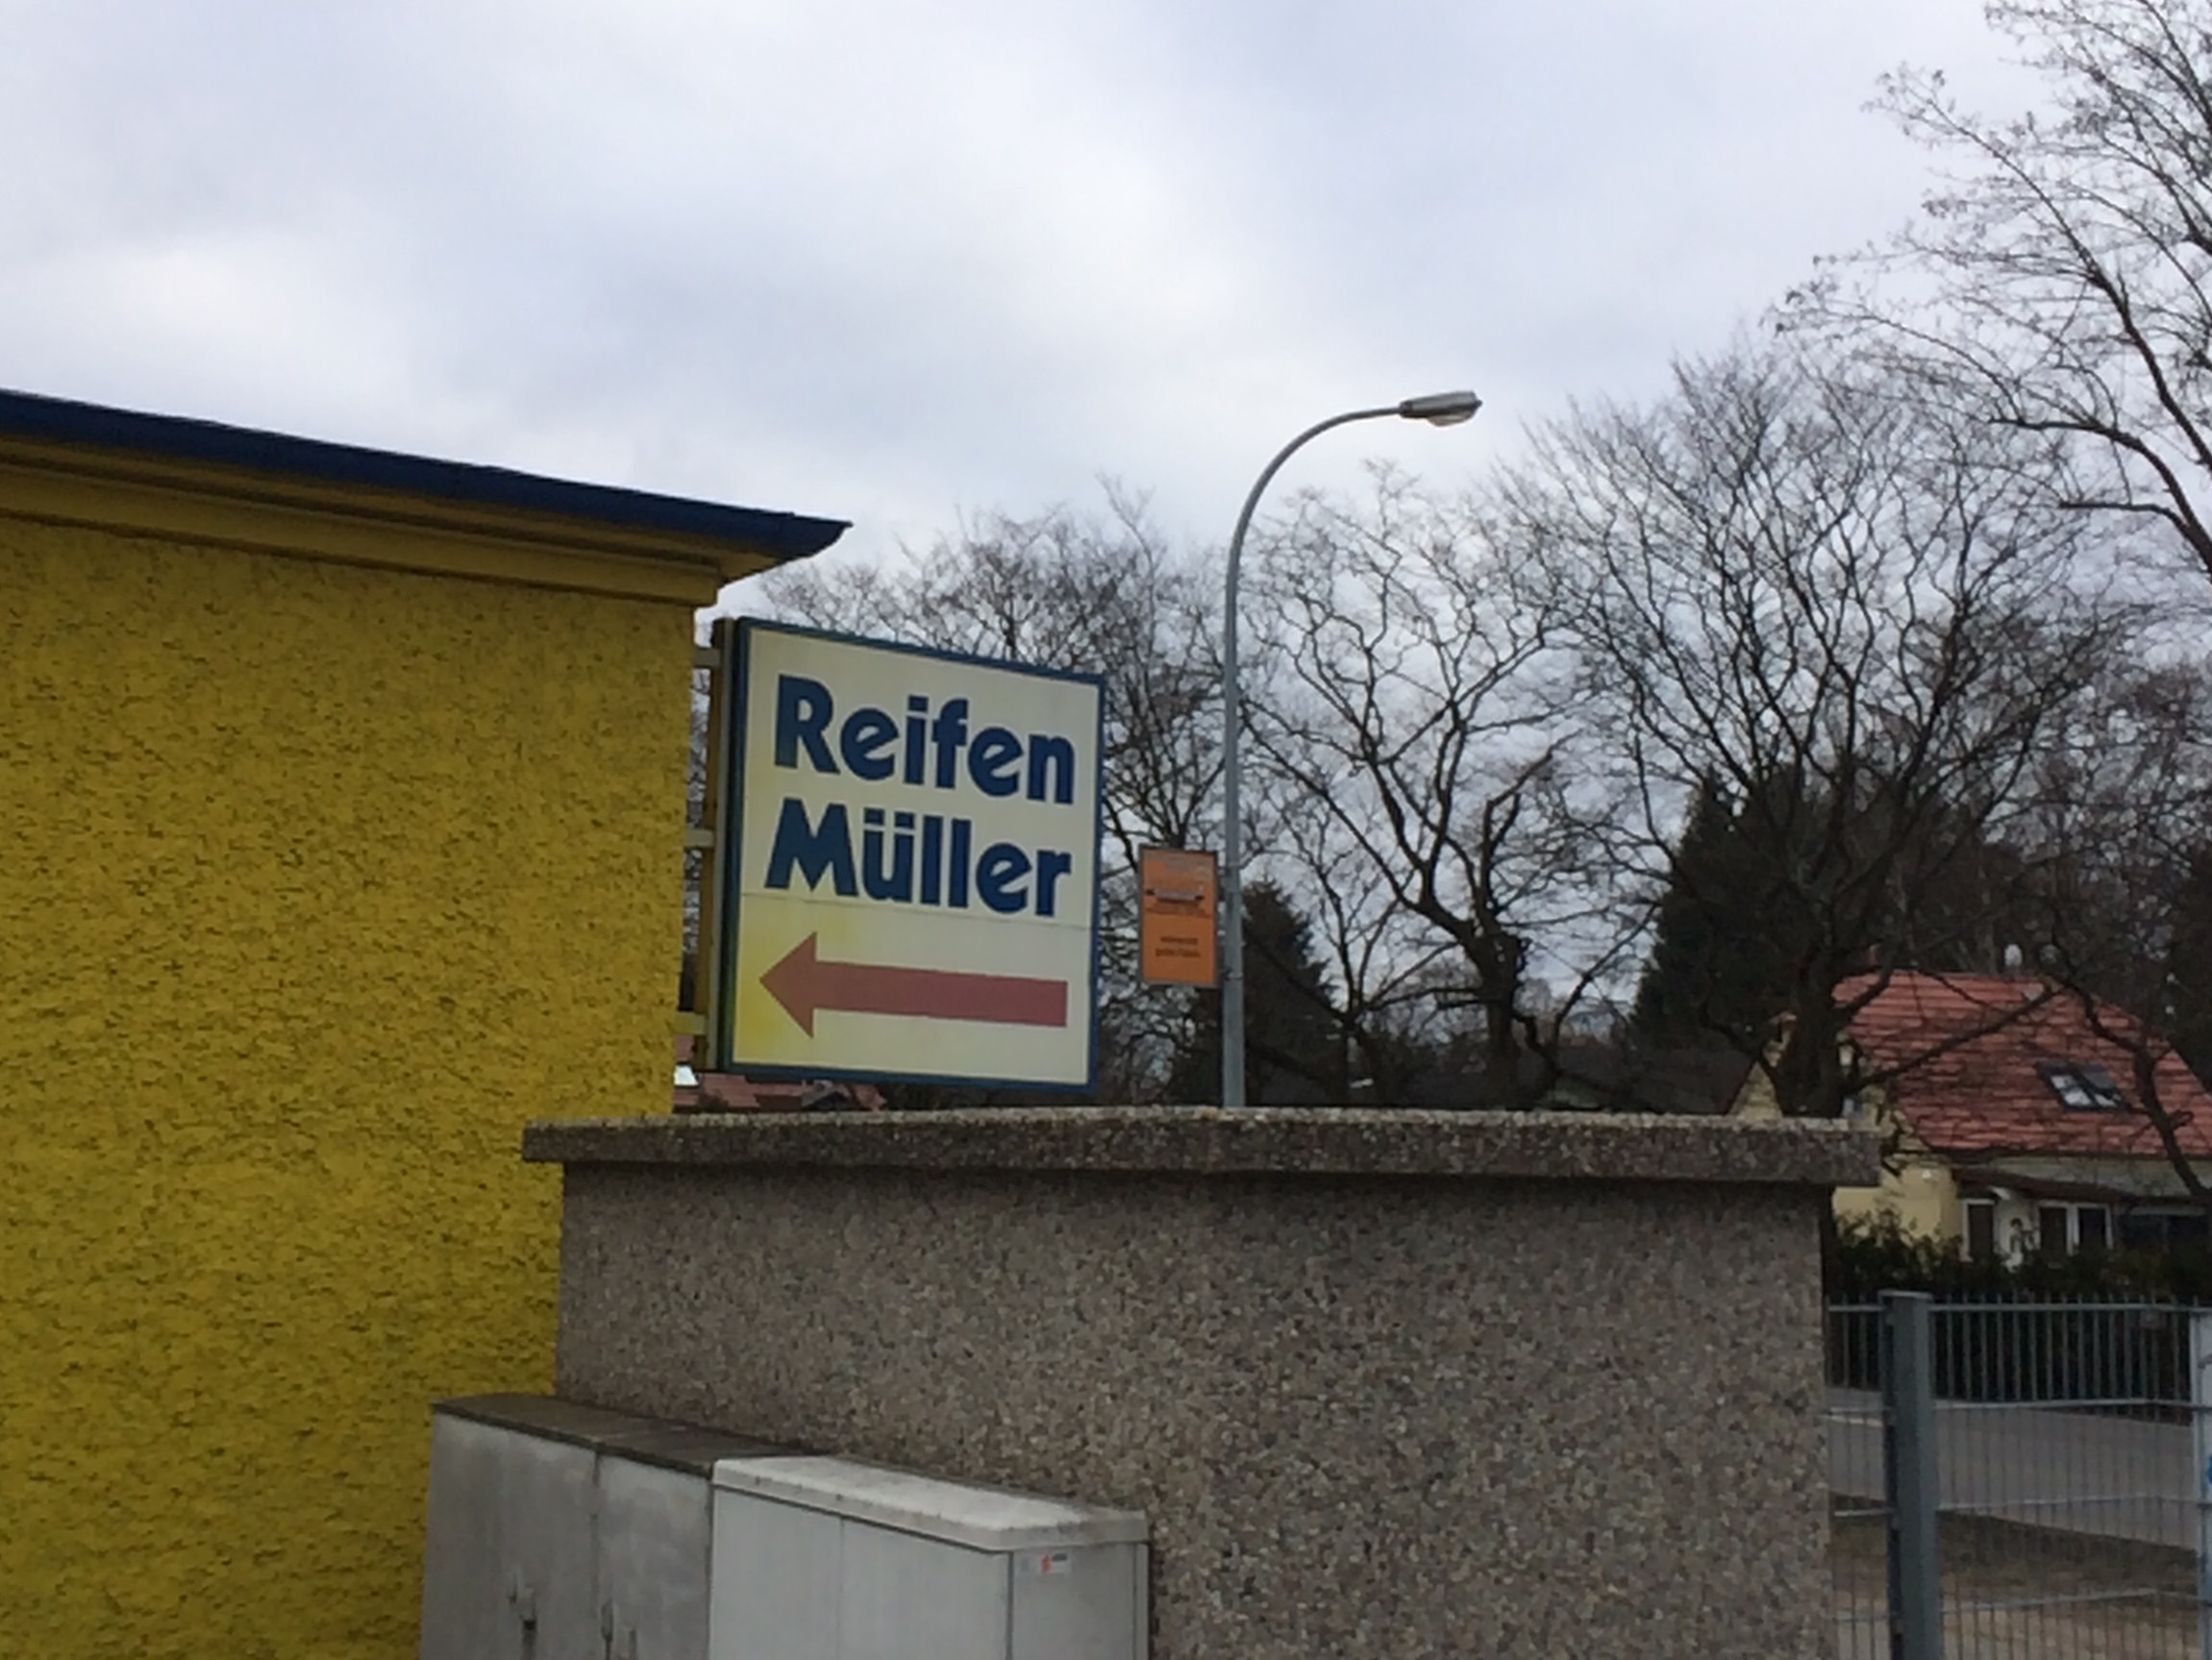 Reifen-Müller, Georg Müller GmbH & Co.KG in 16515 Oranienburg